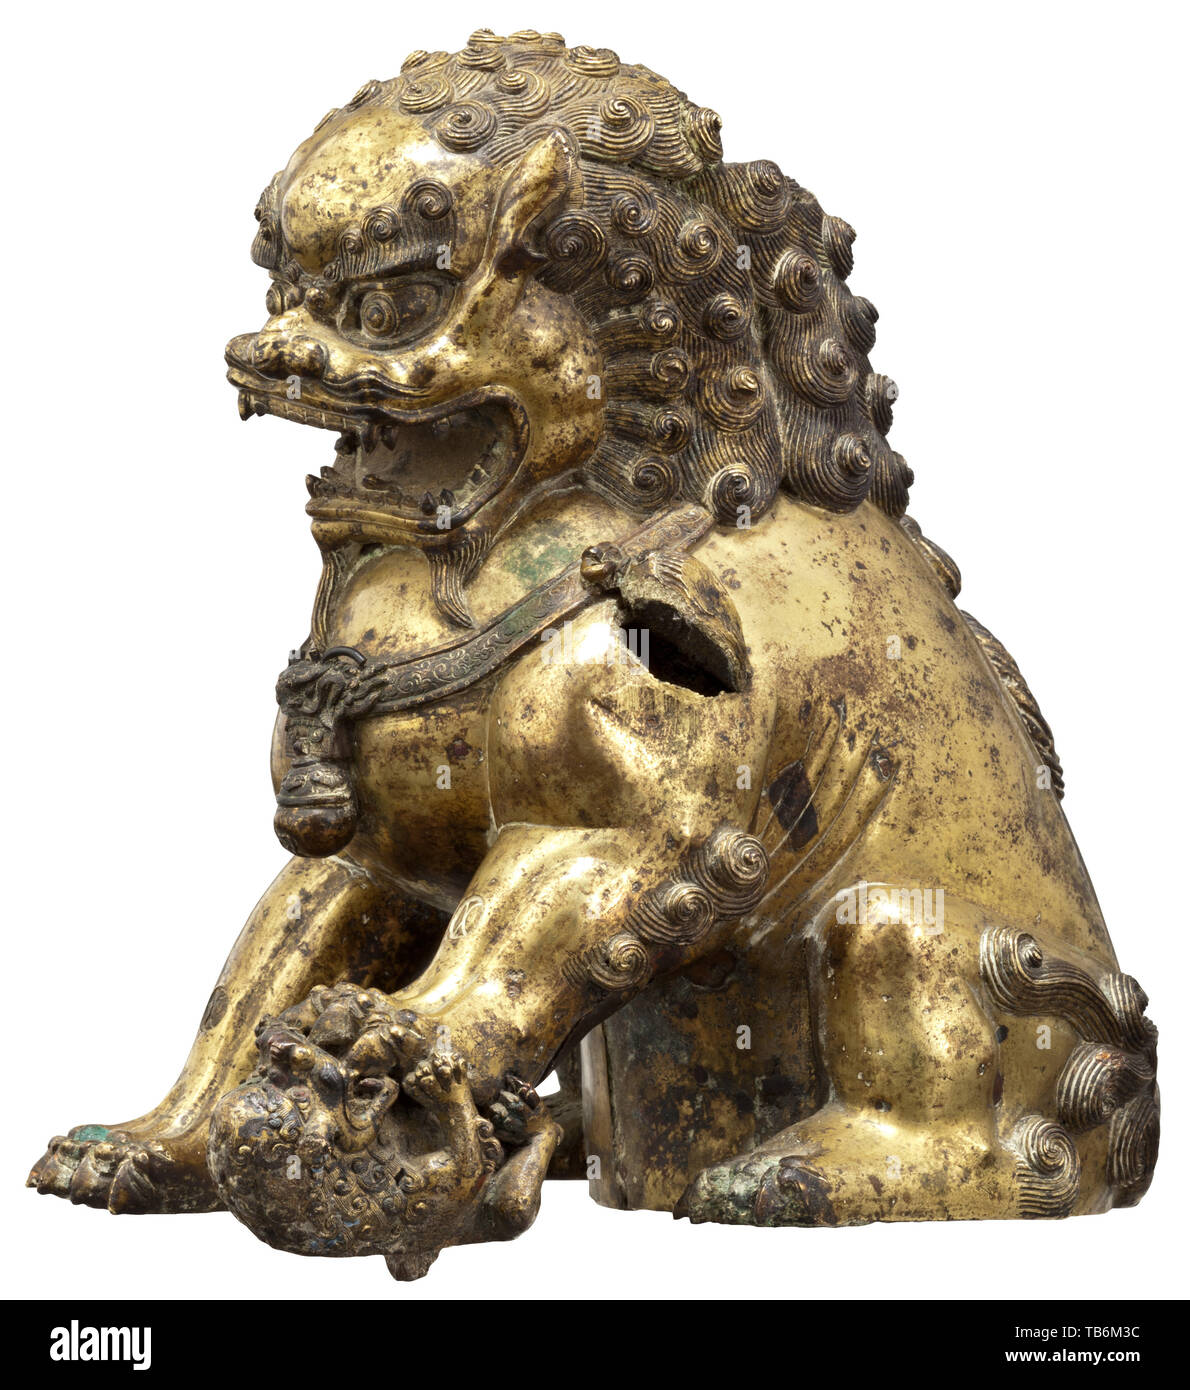 Une lionne en bronze doré (bouddhiste gardien lion) - la dynastie Qing, xviiie siècle, en bronze doré, incendie, marqués et gravés. La créature mythique superbement travaillé assis sur ses pattes arrières, la tête couverte d'une épaisse crinière de boucles dix, le corps robuste également recouvert de fourrure, le visage avec une expression sauvage, sa bouche grande ouverte pour révéler bared les dents, au-dessus duquel yeux exorbités et sourcils broussailleux, une cloche et glands suspendus à un ruban noué autour de la large poitrine, la patte gauche interdisant à son petit sur le terrain. Les pattes avant et l'arrière un roulement , Additional-Rights Clearance-Info-Not-Available- Banque D'Images